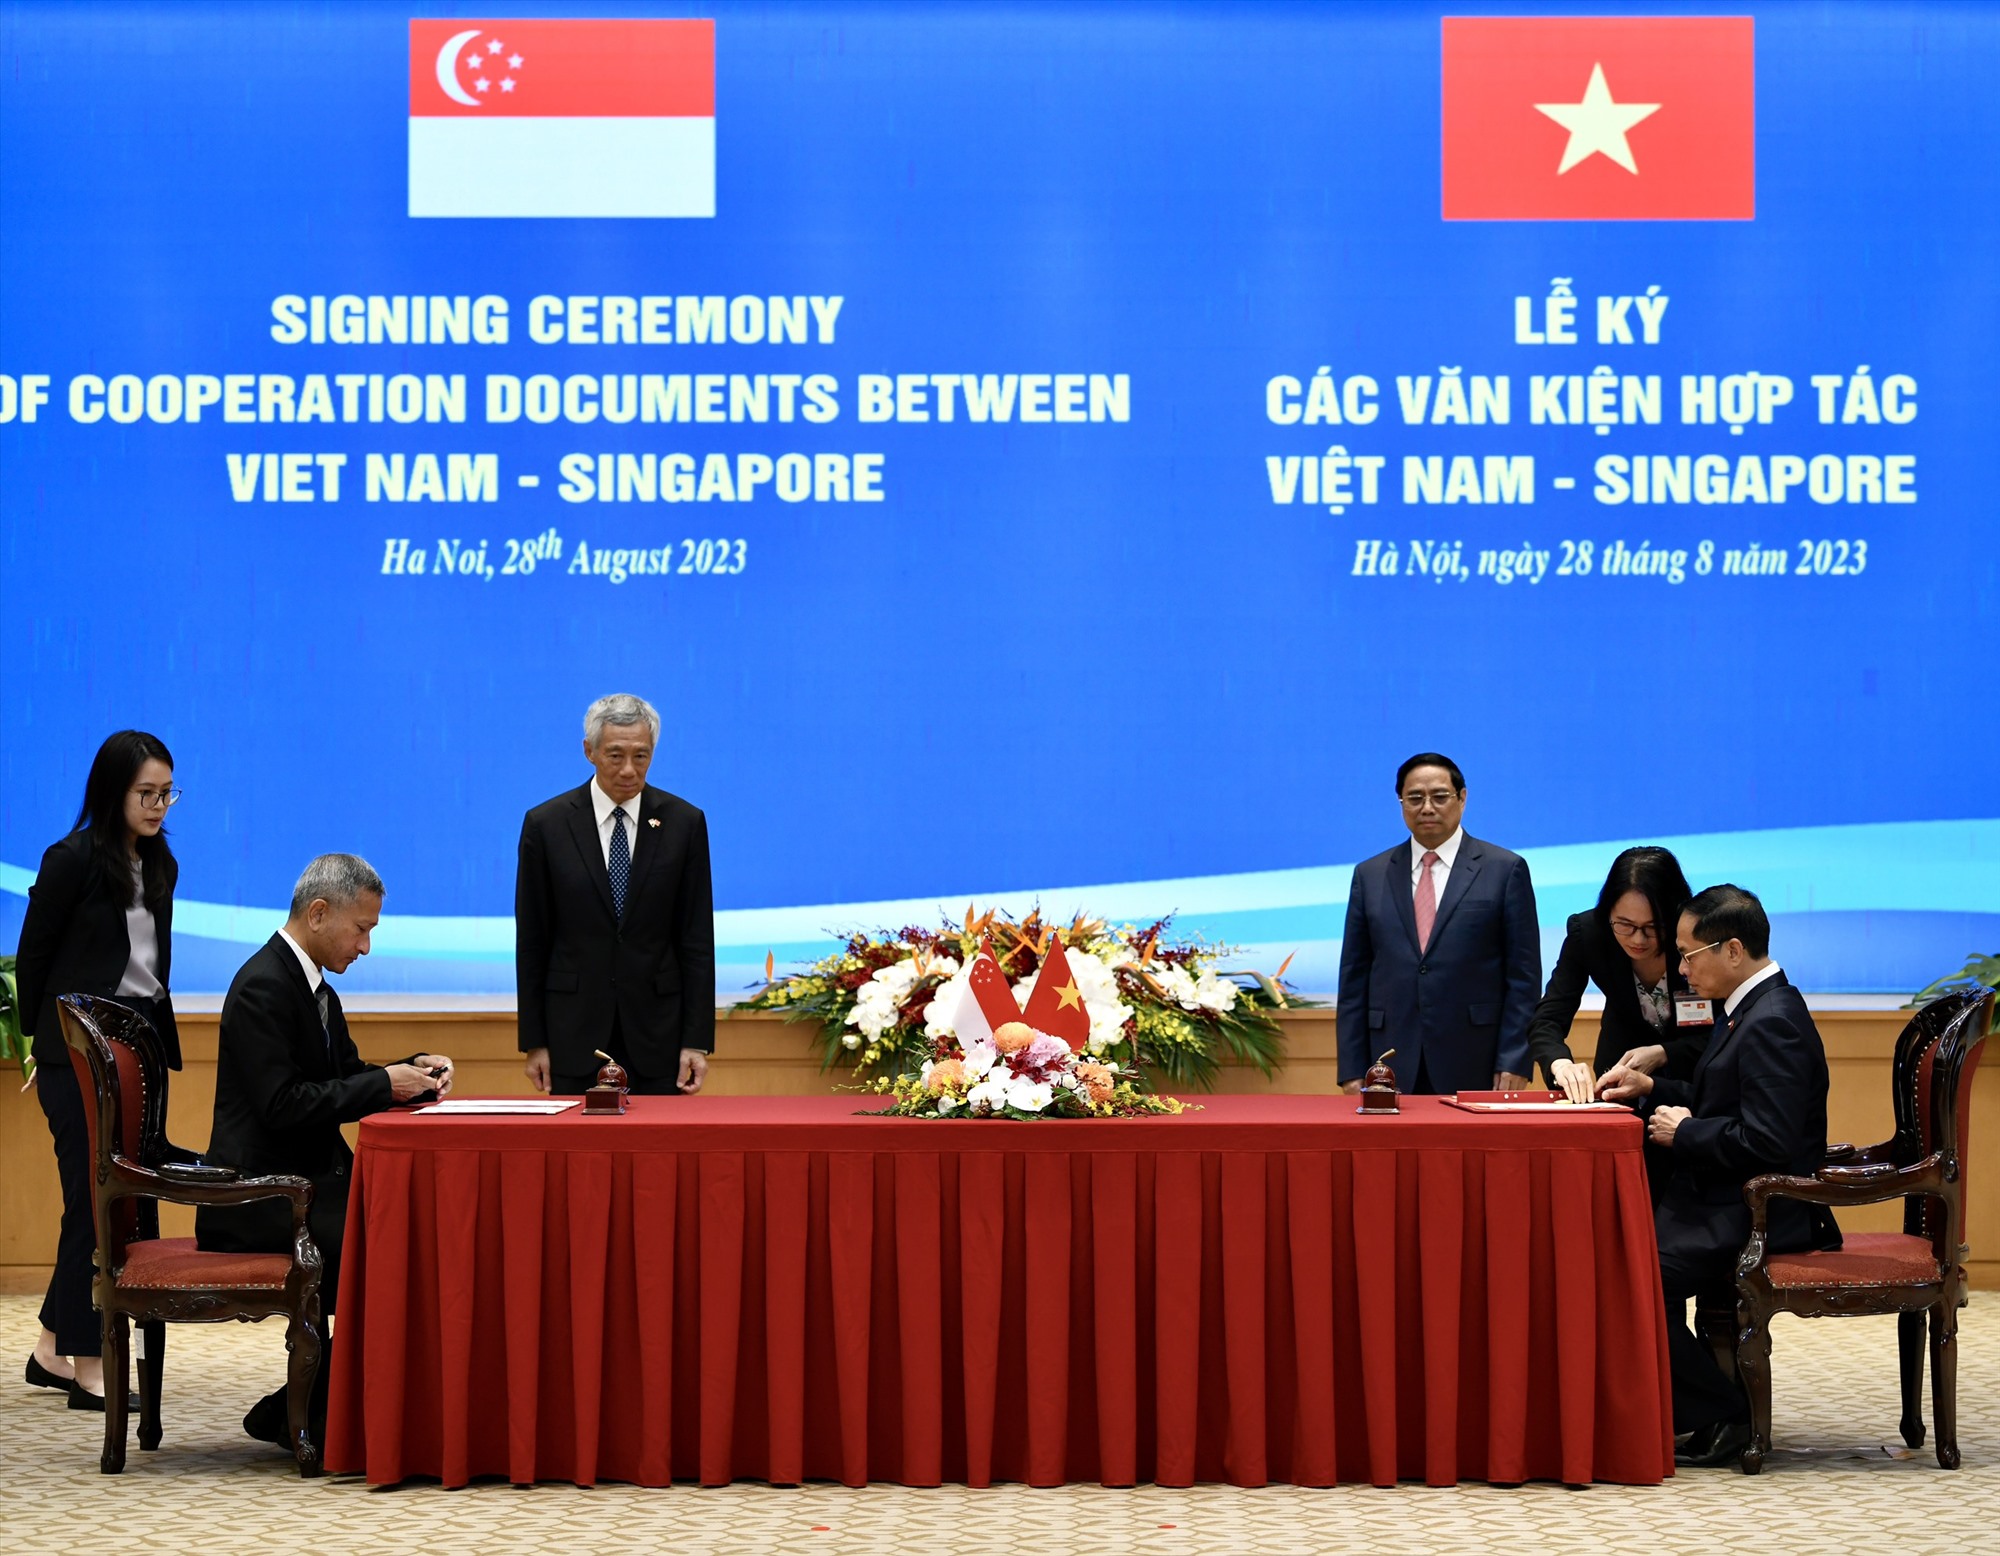 Bộ trưởng Bộ Ngoại giao Bùi Thanh Sơn (ngồi, phải) và Bộ trưởng Bộ Ngoại giao Singapore Vivian Balakrishnan (ngồi, trái) ký thỏa thuận hợp tác. Ảnh: Hải Nguyễn